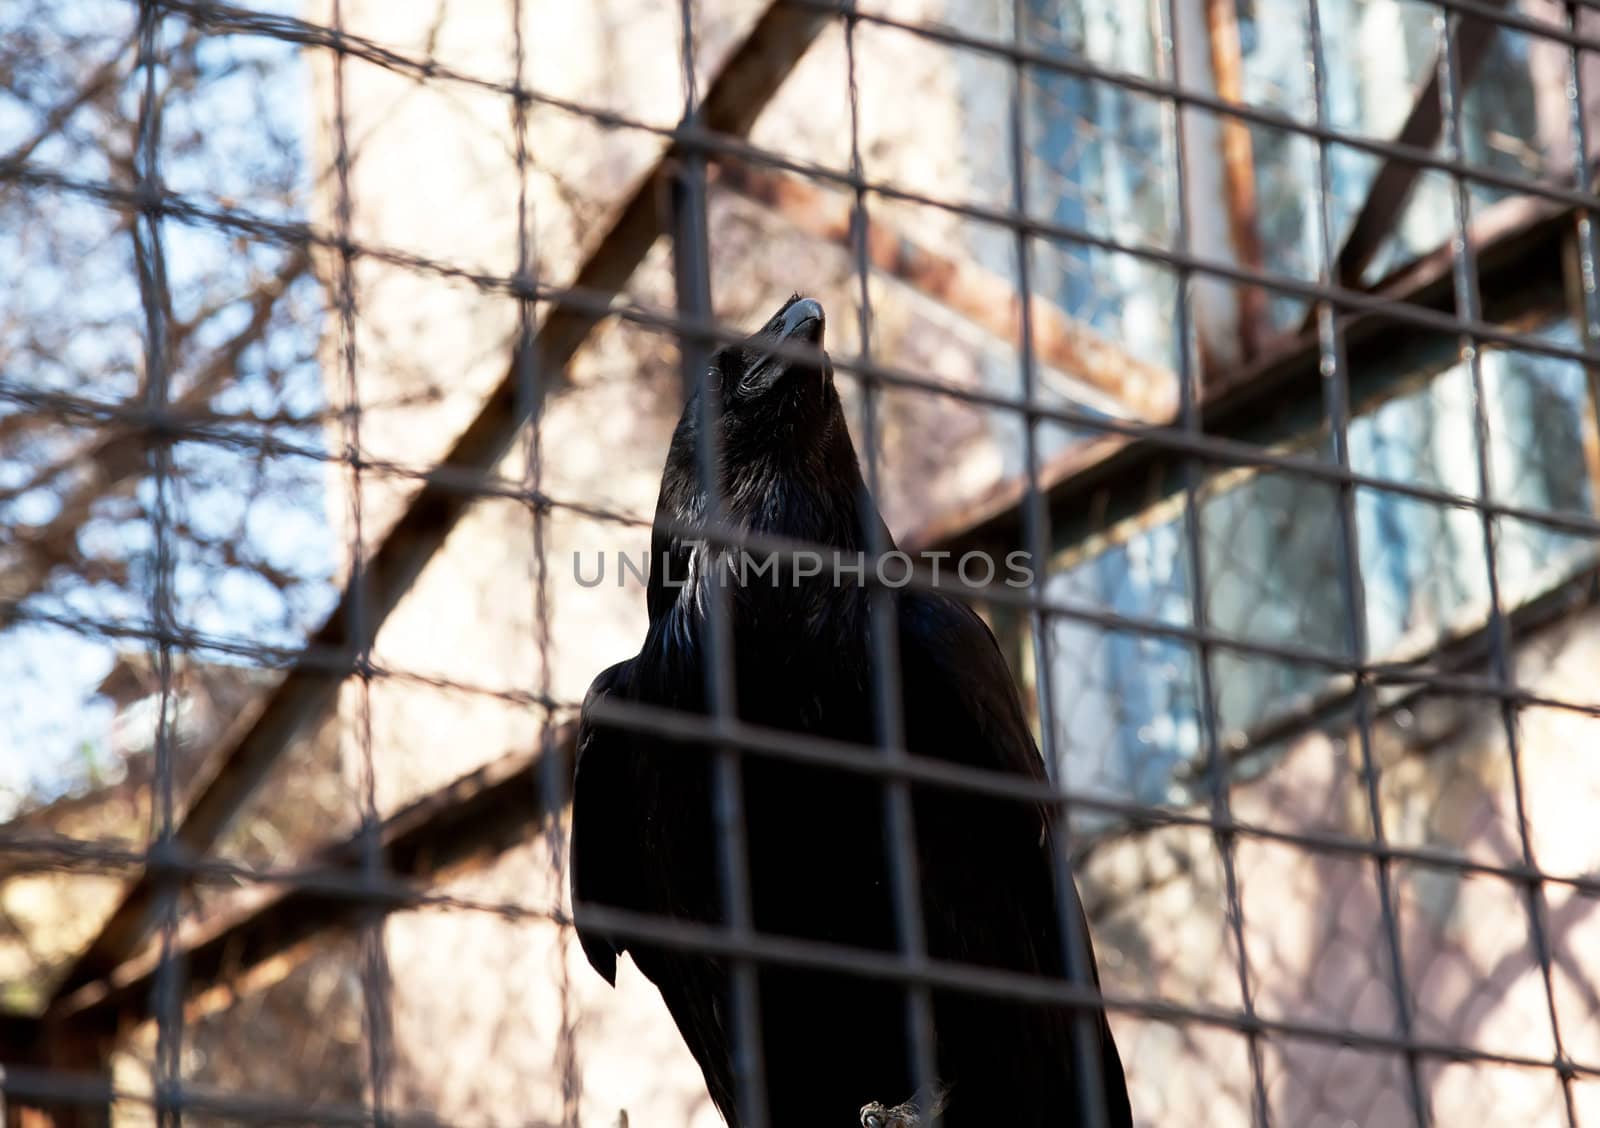 Black raven by RawGroup